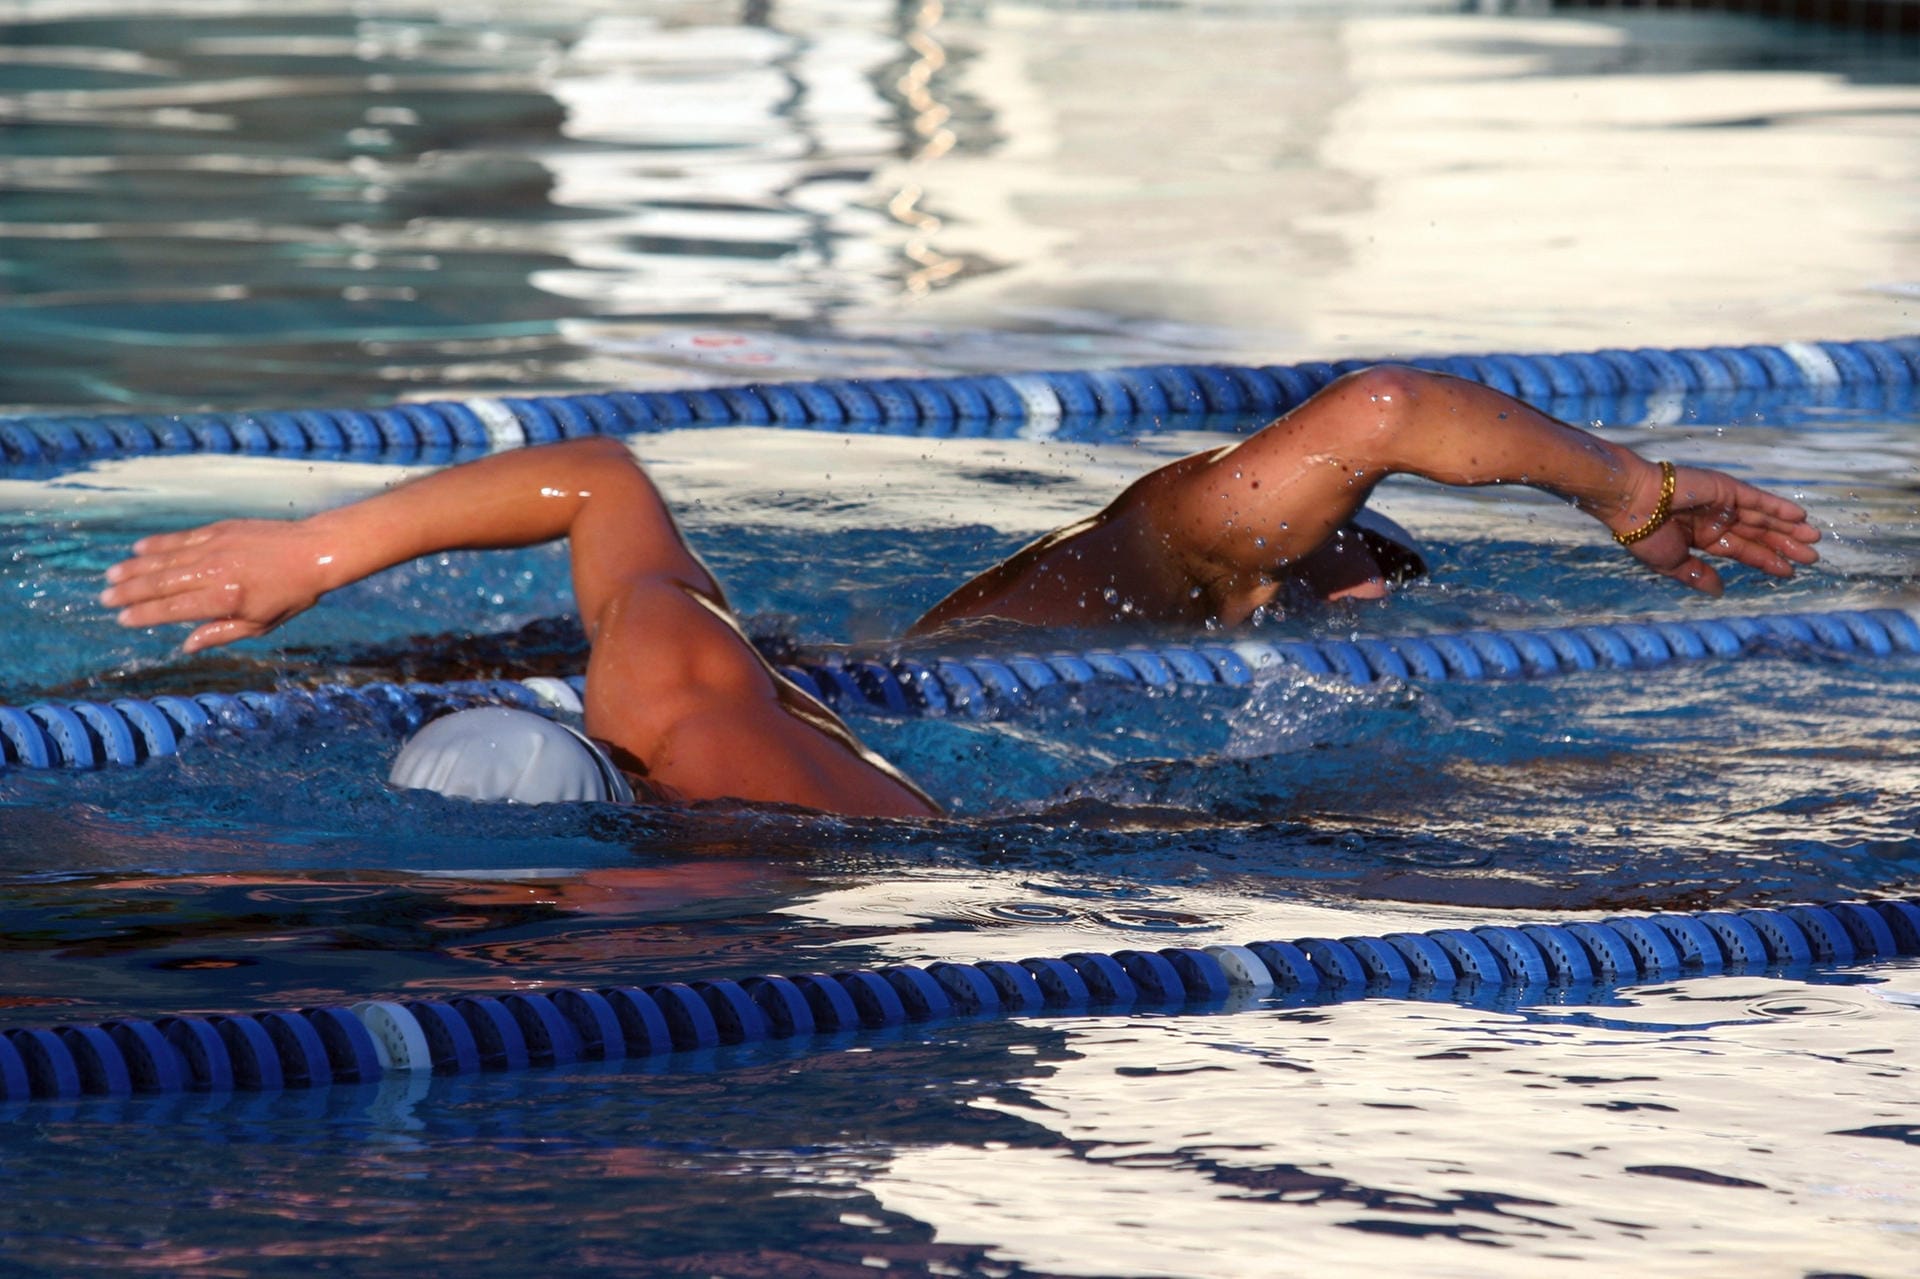 Suchen Sie sich am besten ein Schwimmbad mit Sportschwimmer-Bahnen – dann kommen Sie den anderen Badegästen nicht in die Quere und können sich auf Ihr Training konzentrieren.